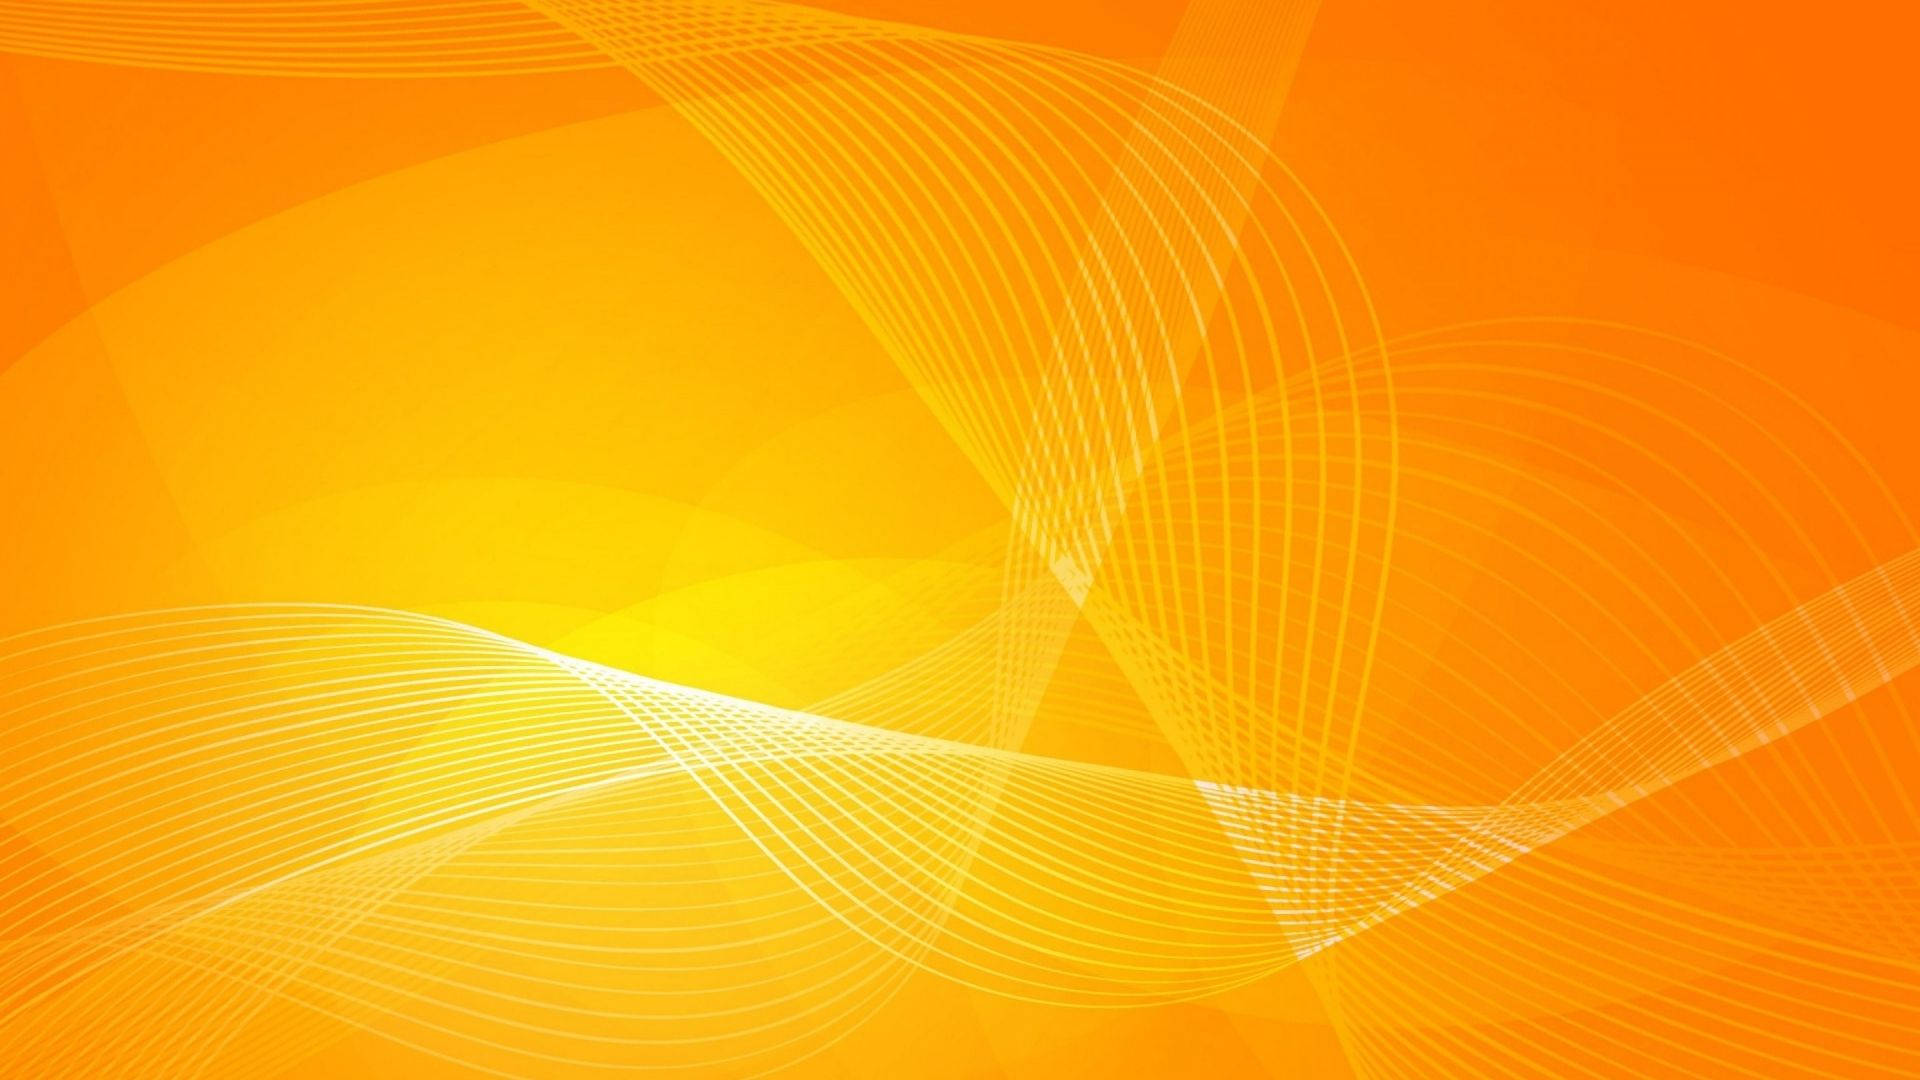 Wavy Lines On Orange Background Background